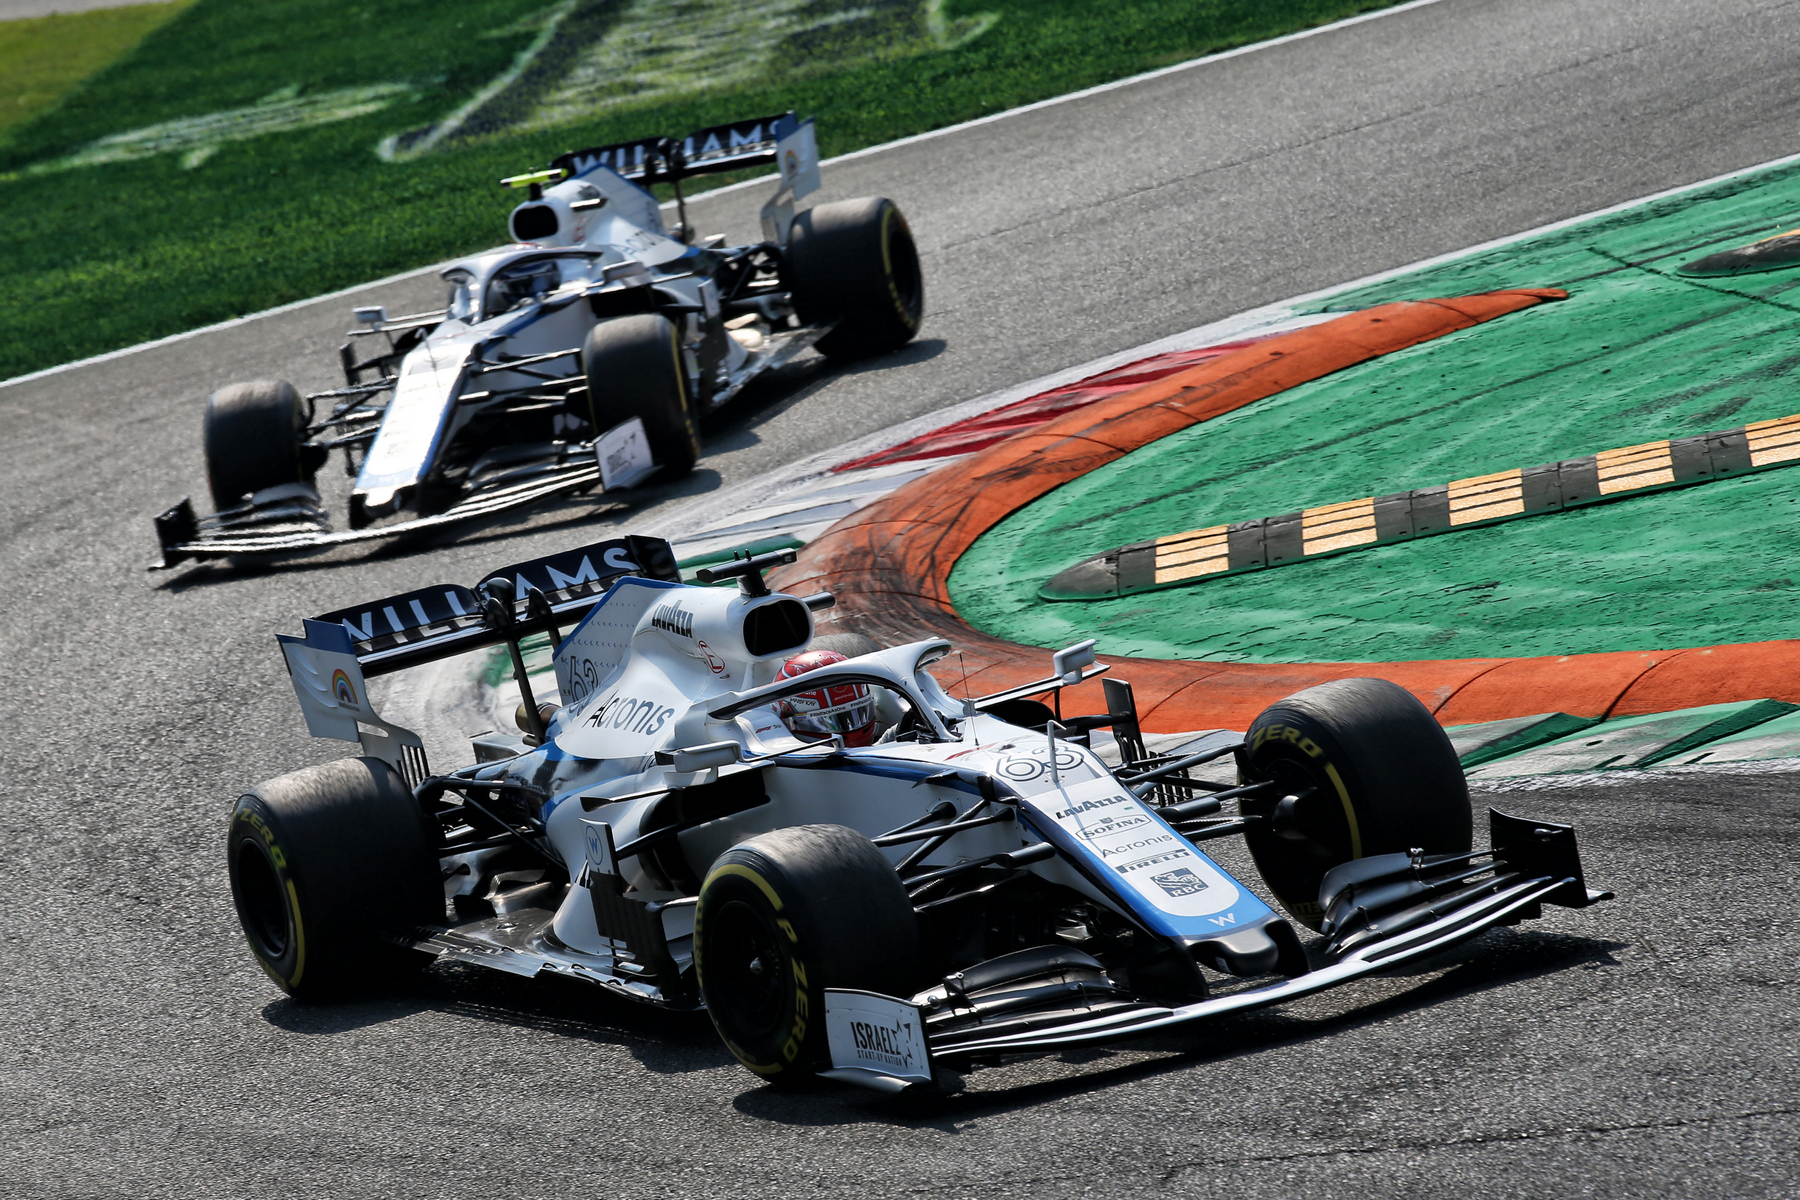 Analiza sezone: Williams Racing – prvi put u povijesti bez osvojenog boda